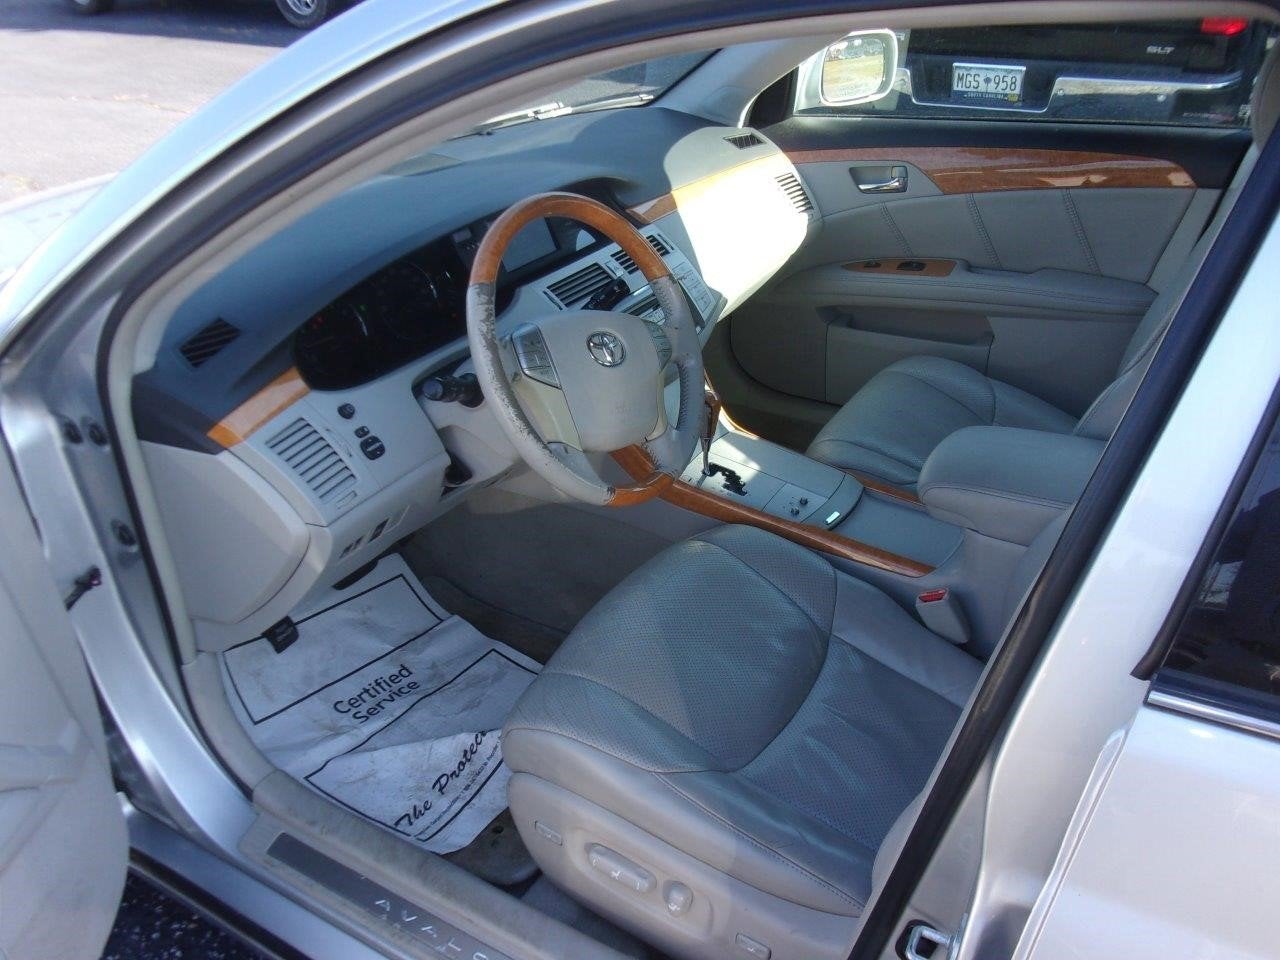 2007 Toyota Avalon XL